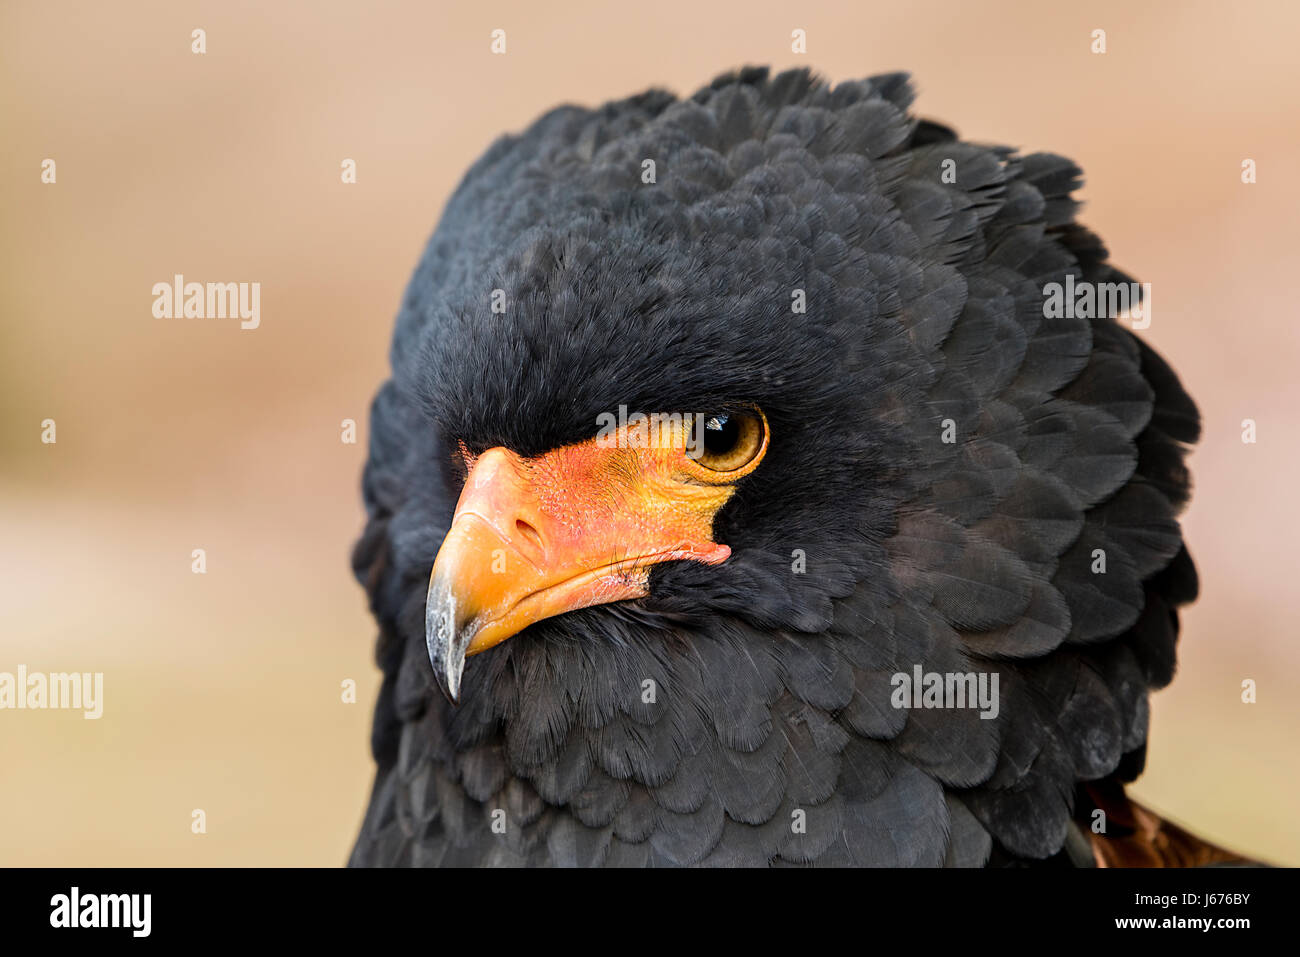 Close up head shot de l'aigle Bateleur, Snake Eagle montrant les yeux et bec crochu Banque D'Images